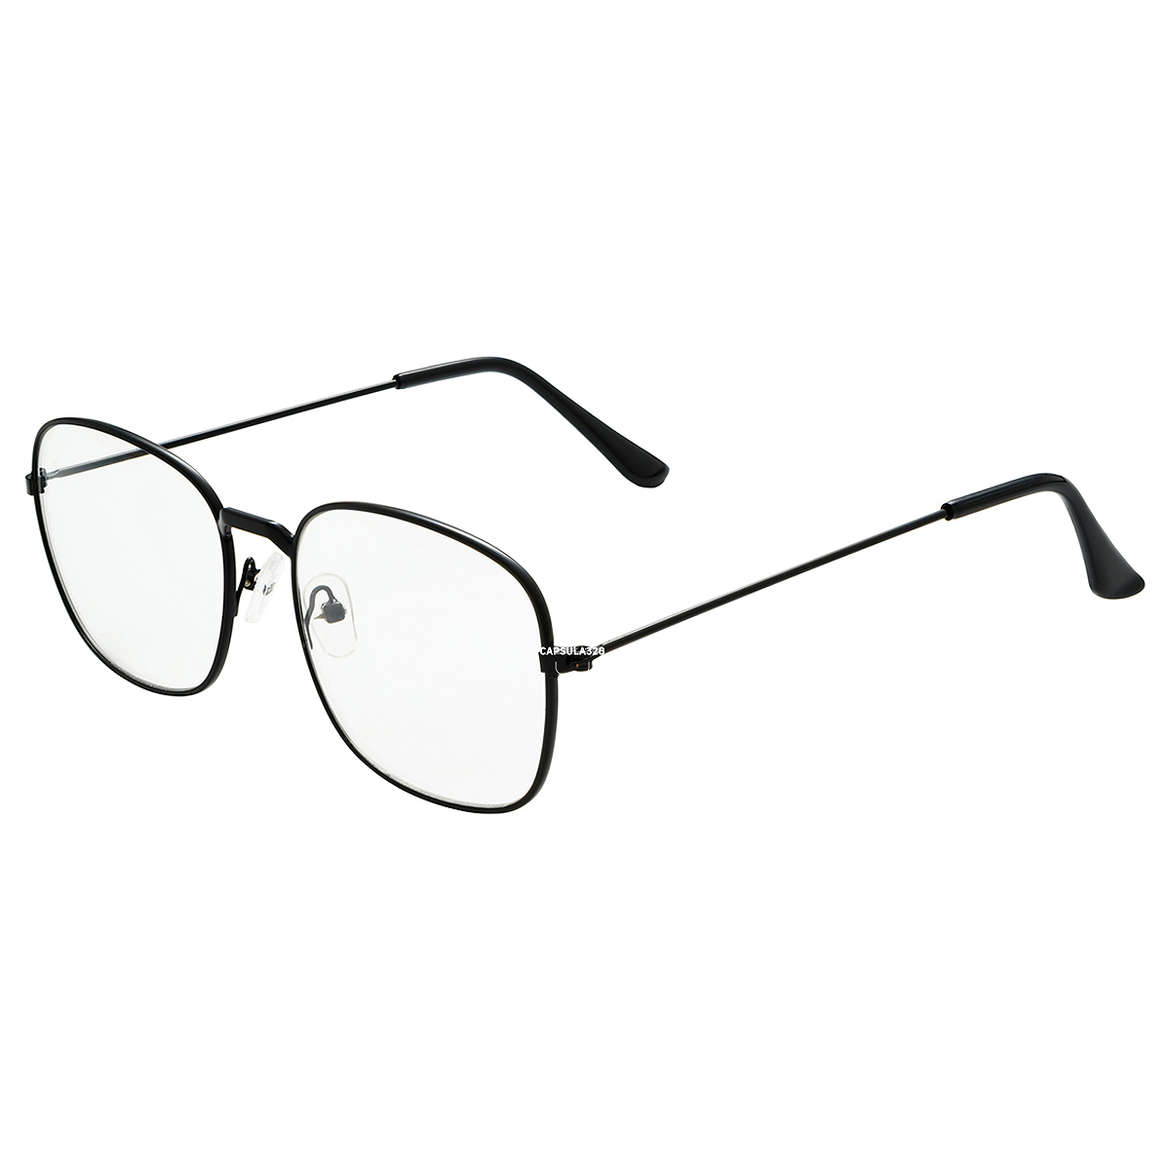 Имиджевые очки Square 1404